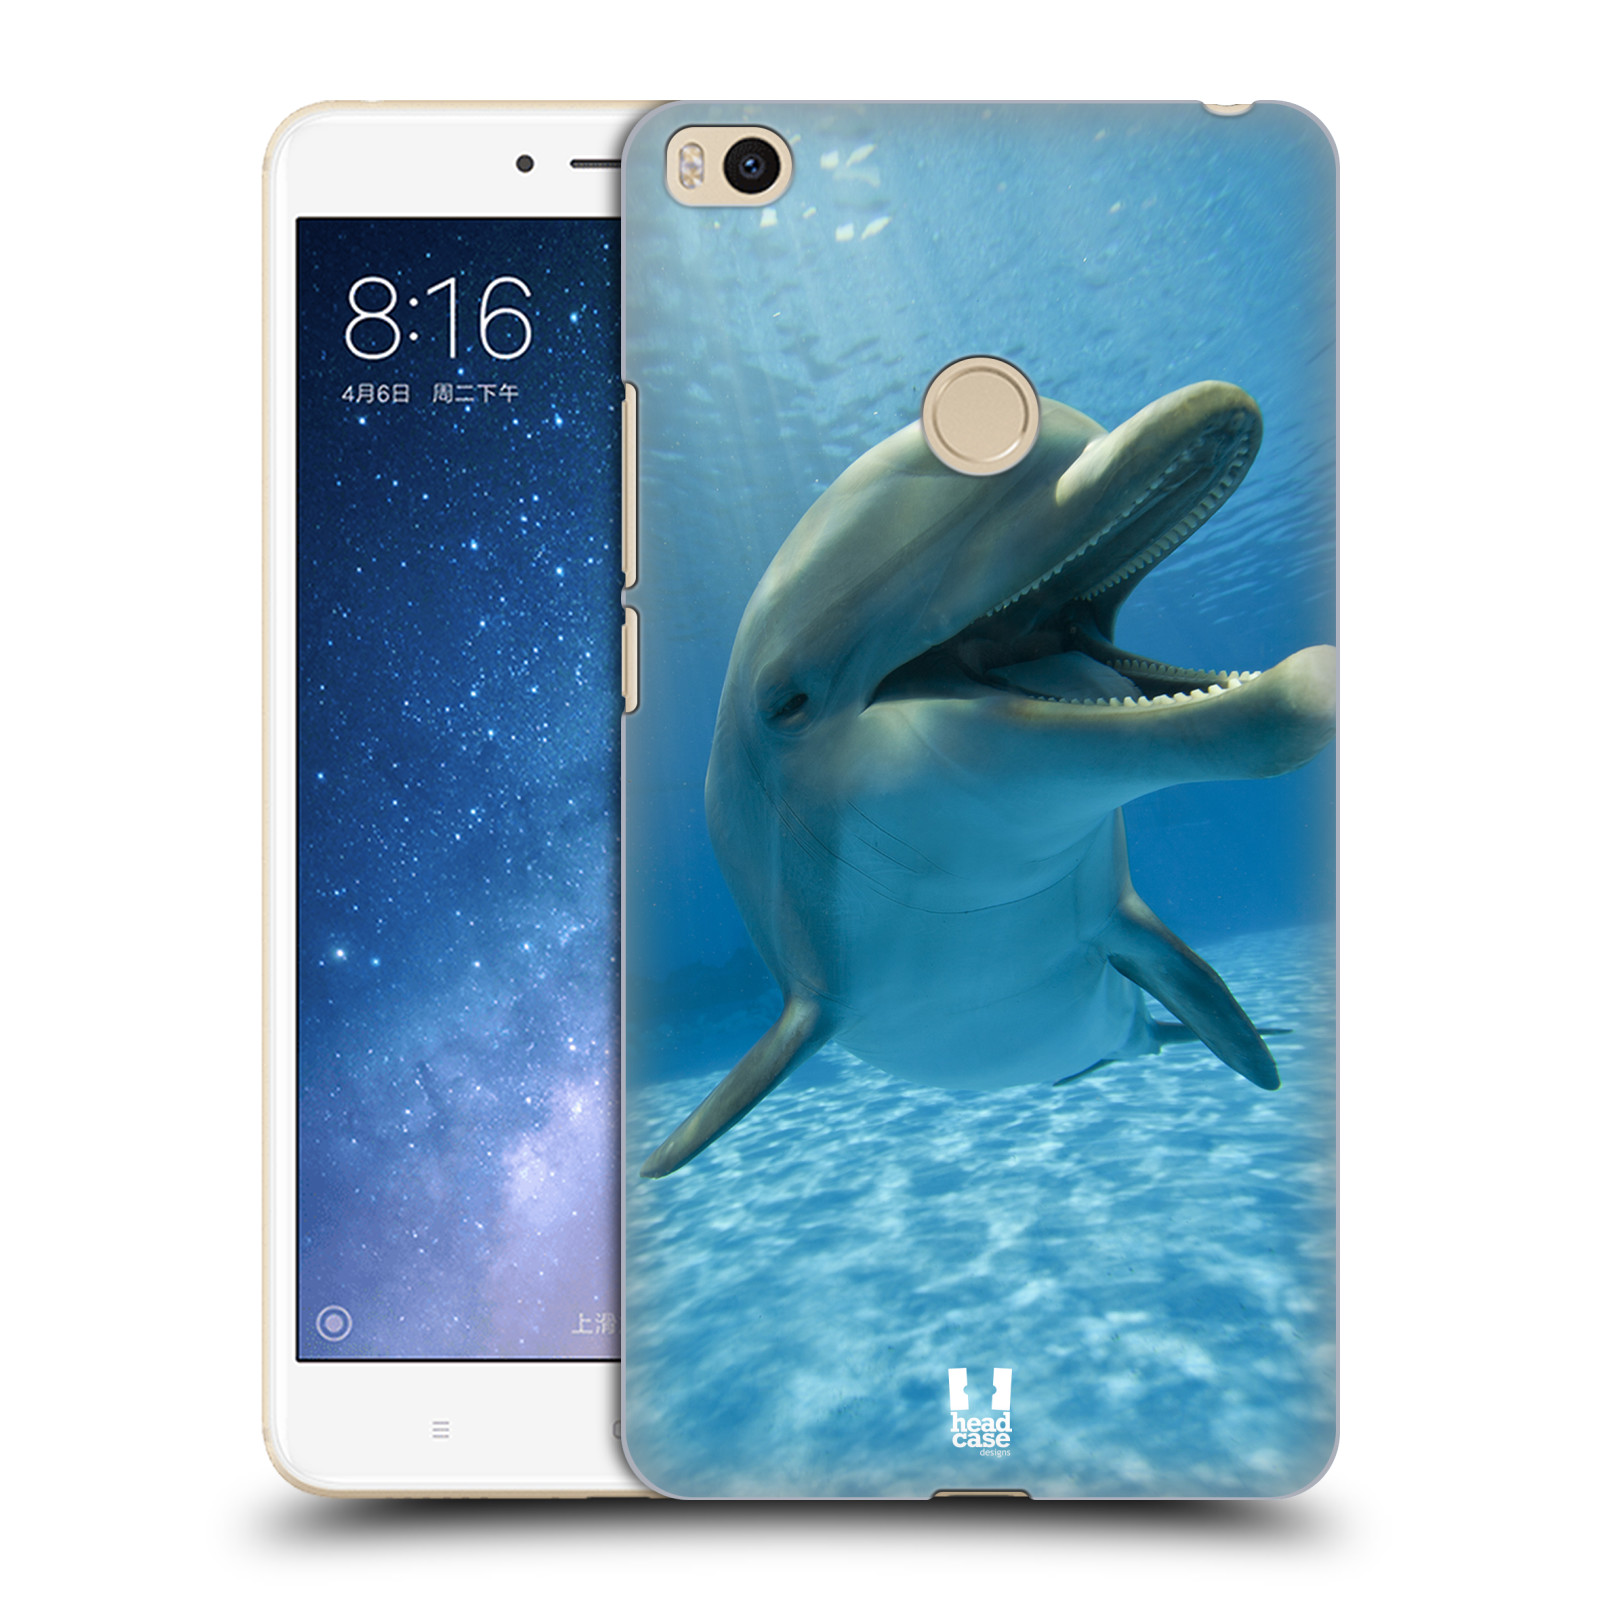 Zadní obal pro mobil Xiaomi Mi Max 2 - HEAD CASE - Svět zvířat delfín v moři